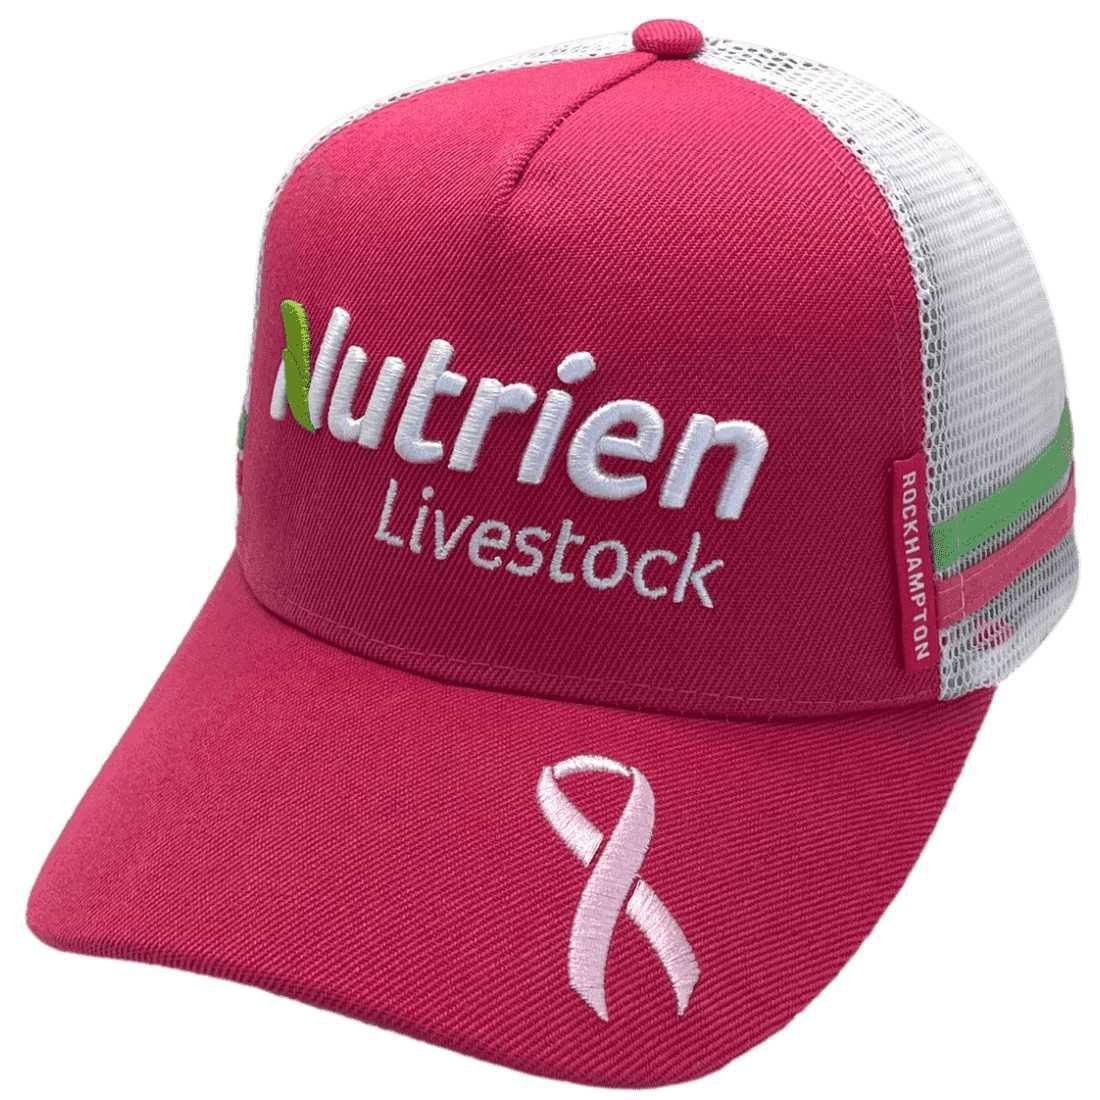 Nutrien Livestock LP Midrange Aussie Trucker Hat Cotton Hot Pink